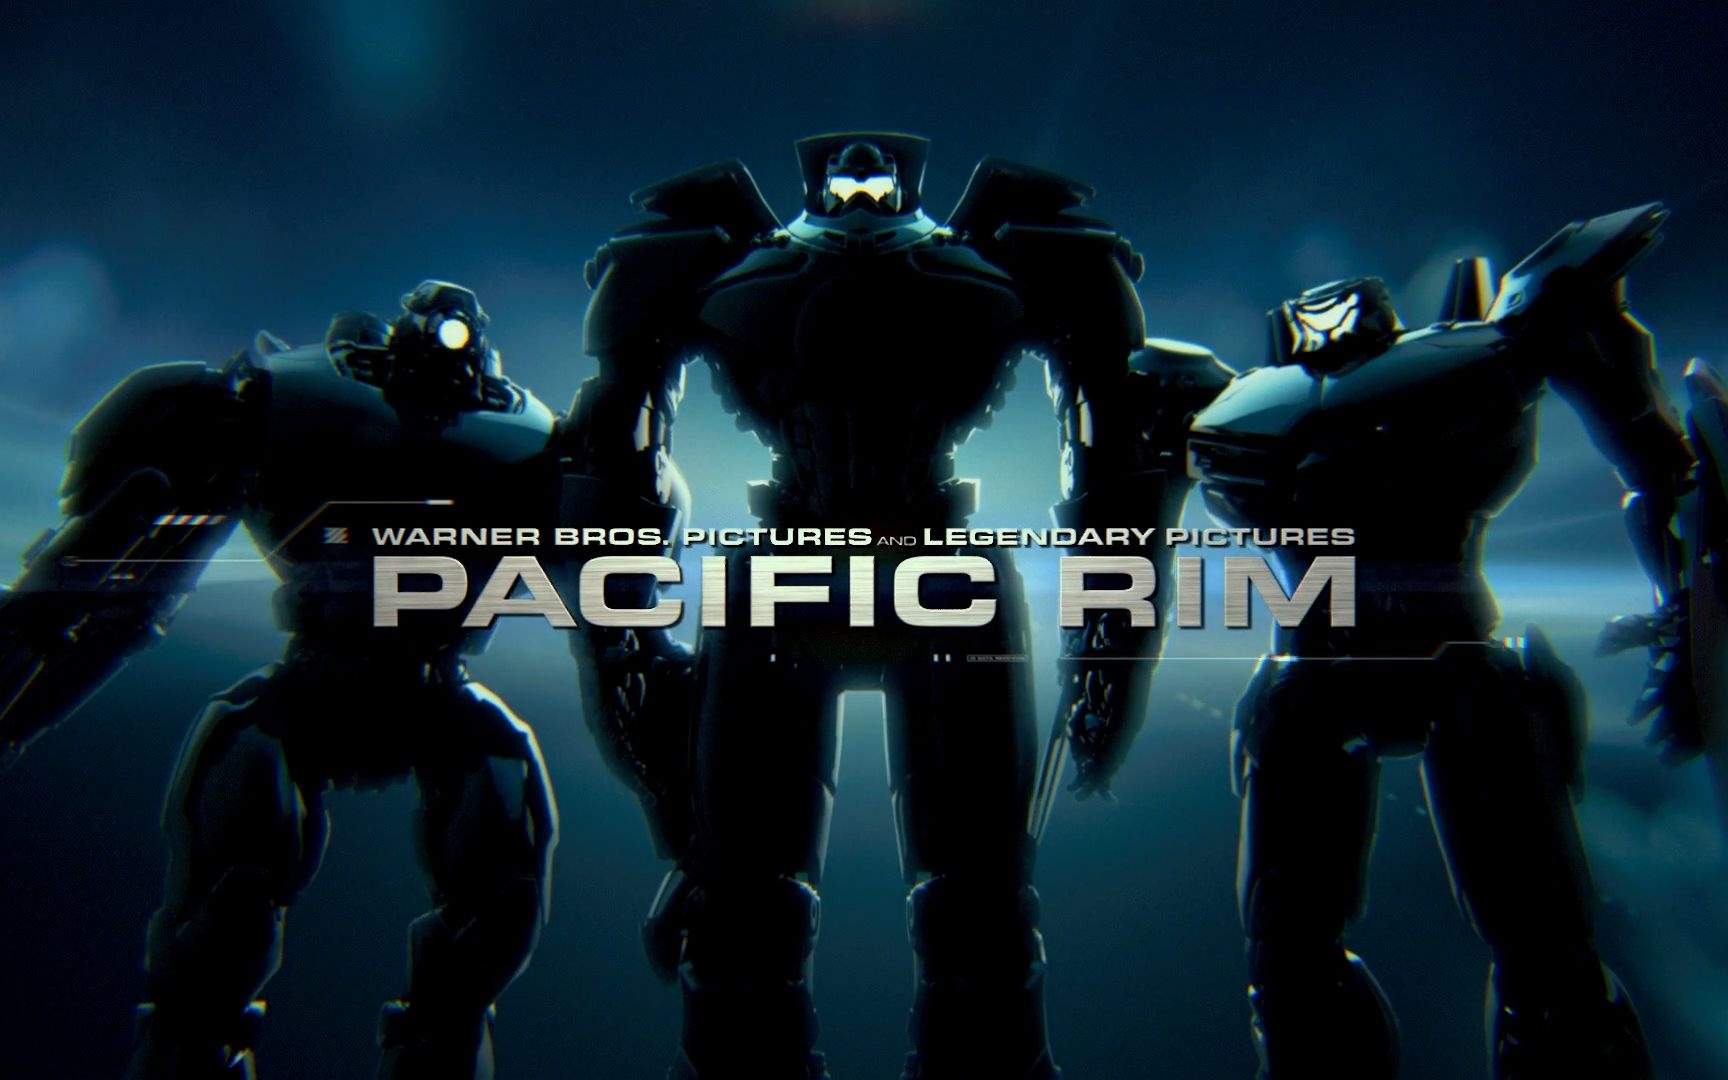 Hình nền  vành đai Thái Bình Dương Pacific Rim Uprising Jaegers Robot  khoa học viễn tưởng 1920x1080  dominomd  1291705  Hình nền đẹp hd   WallHere